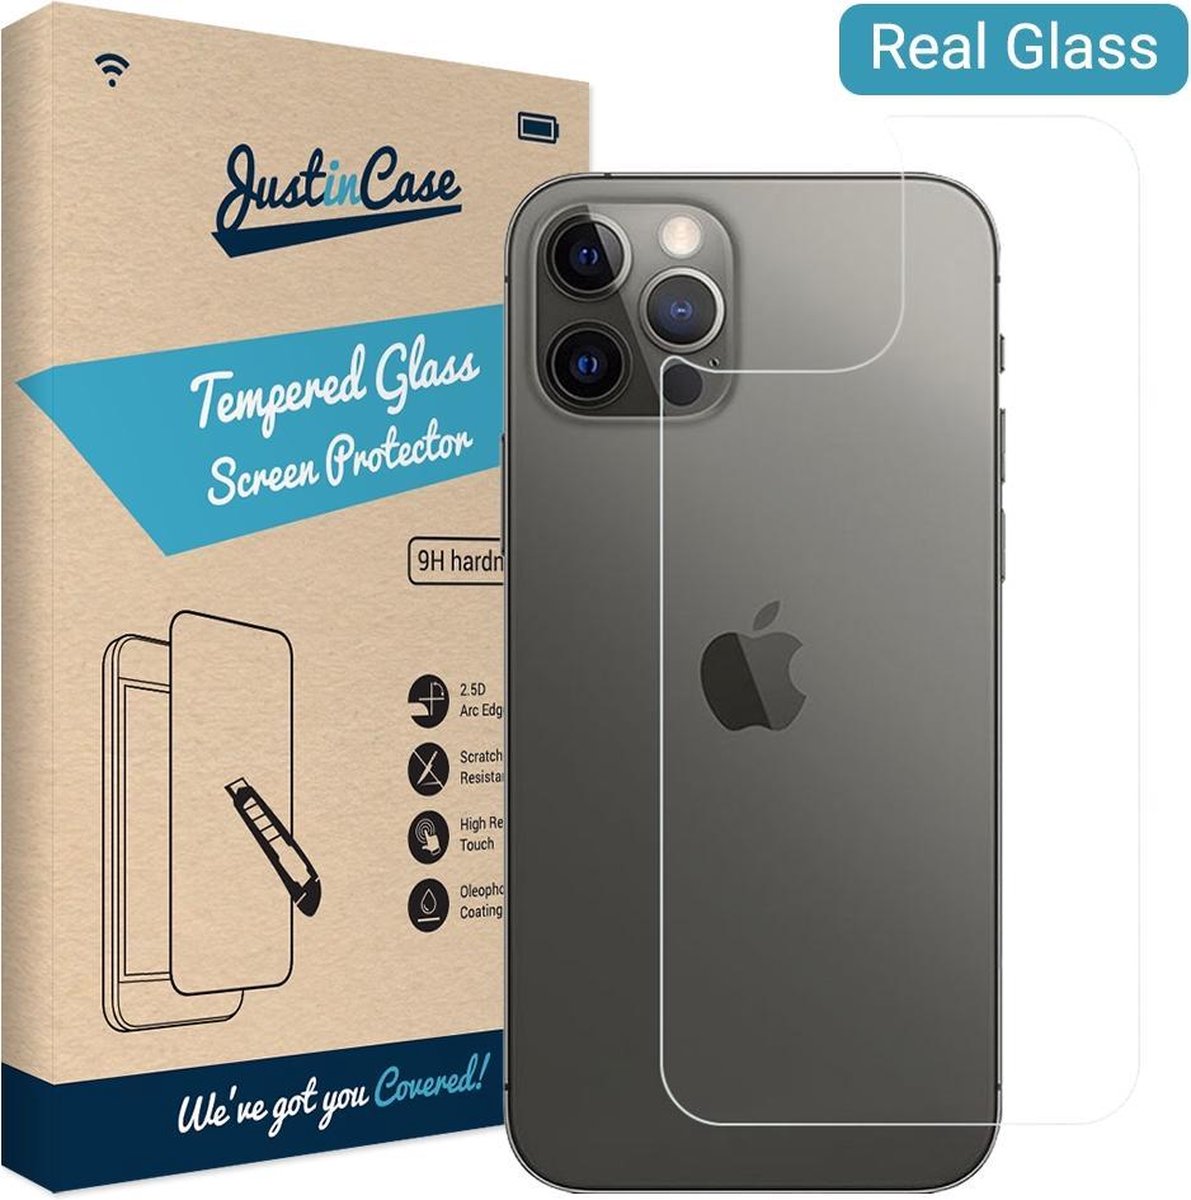 Just In Case Tempered Glass Apple iPhone 12 mini Protège-écran - Coolblue -  avant 23:59, demain chez vous